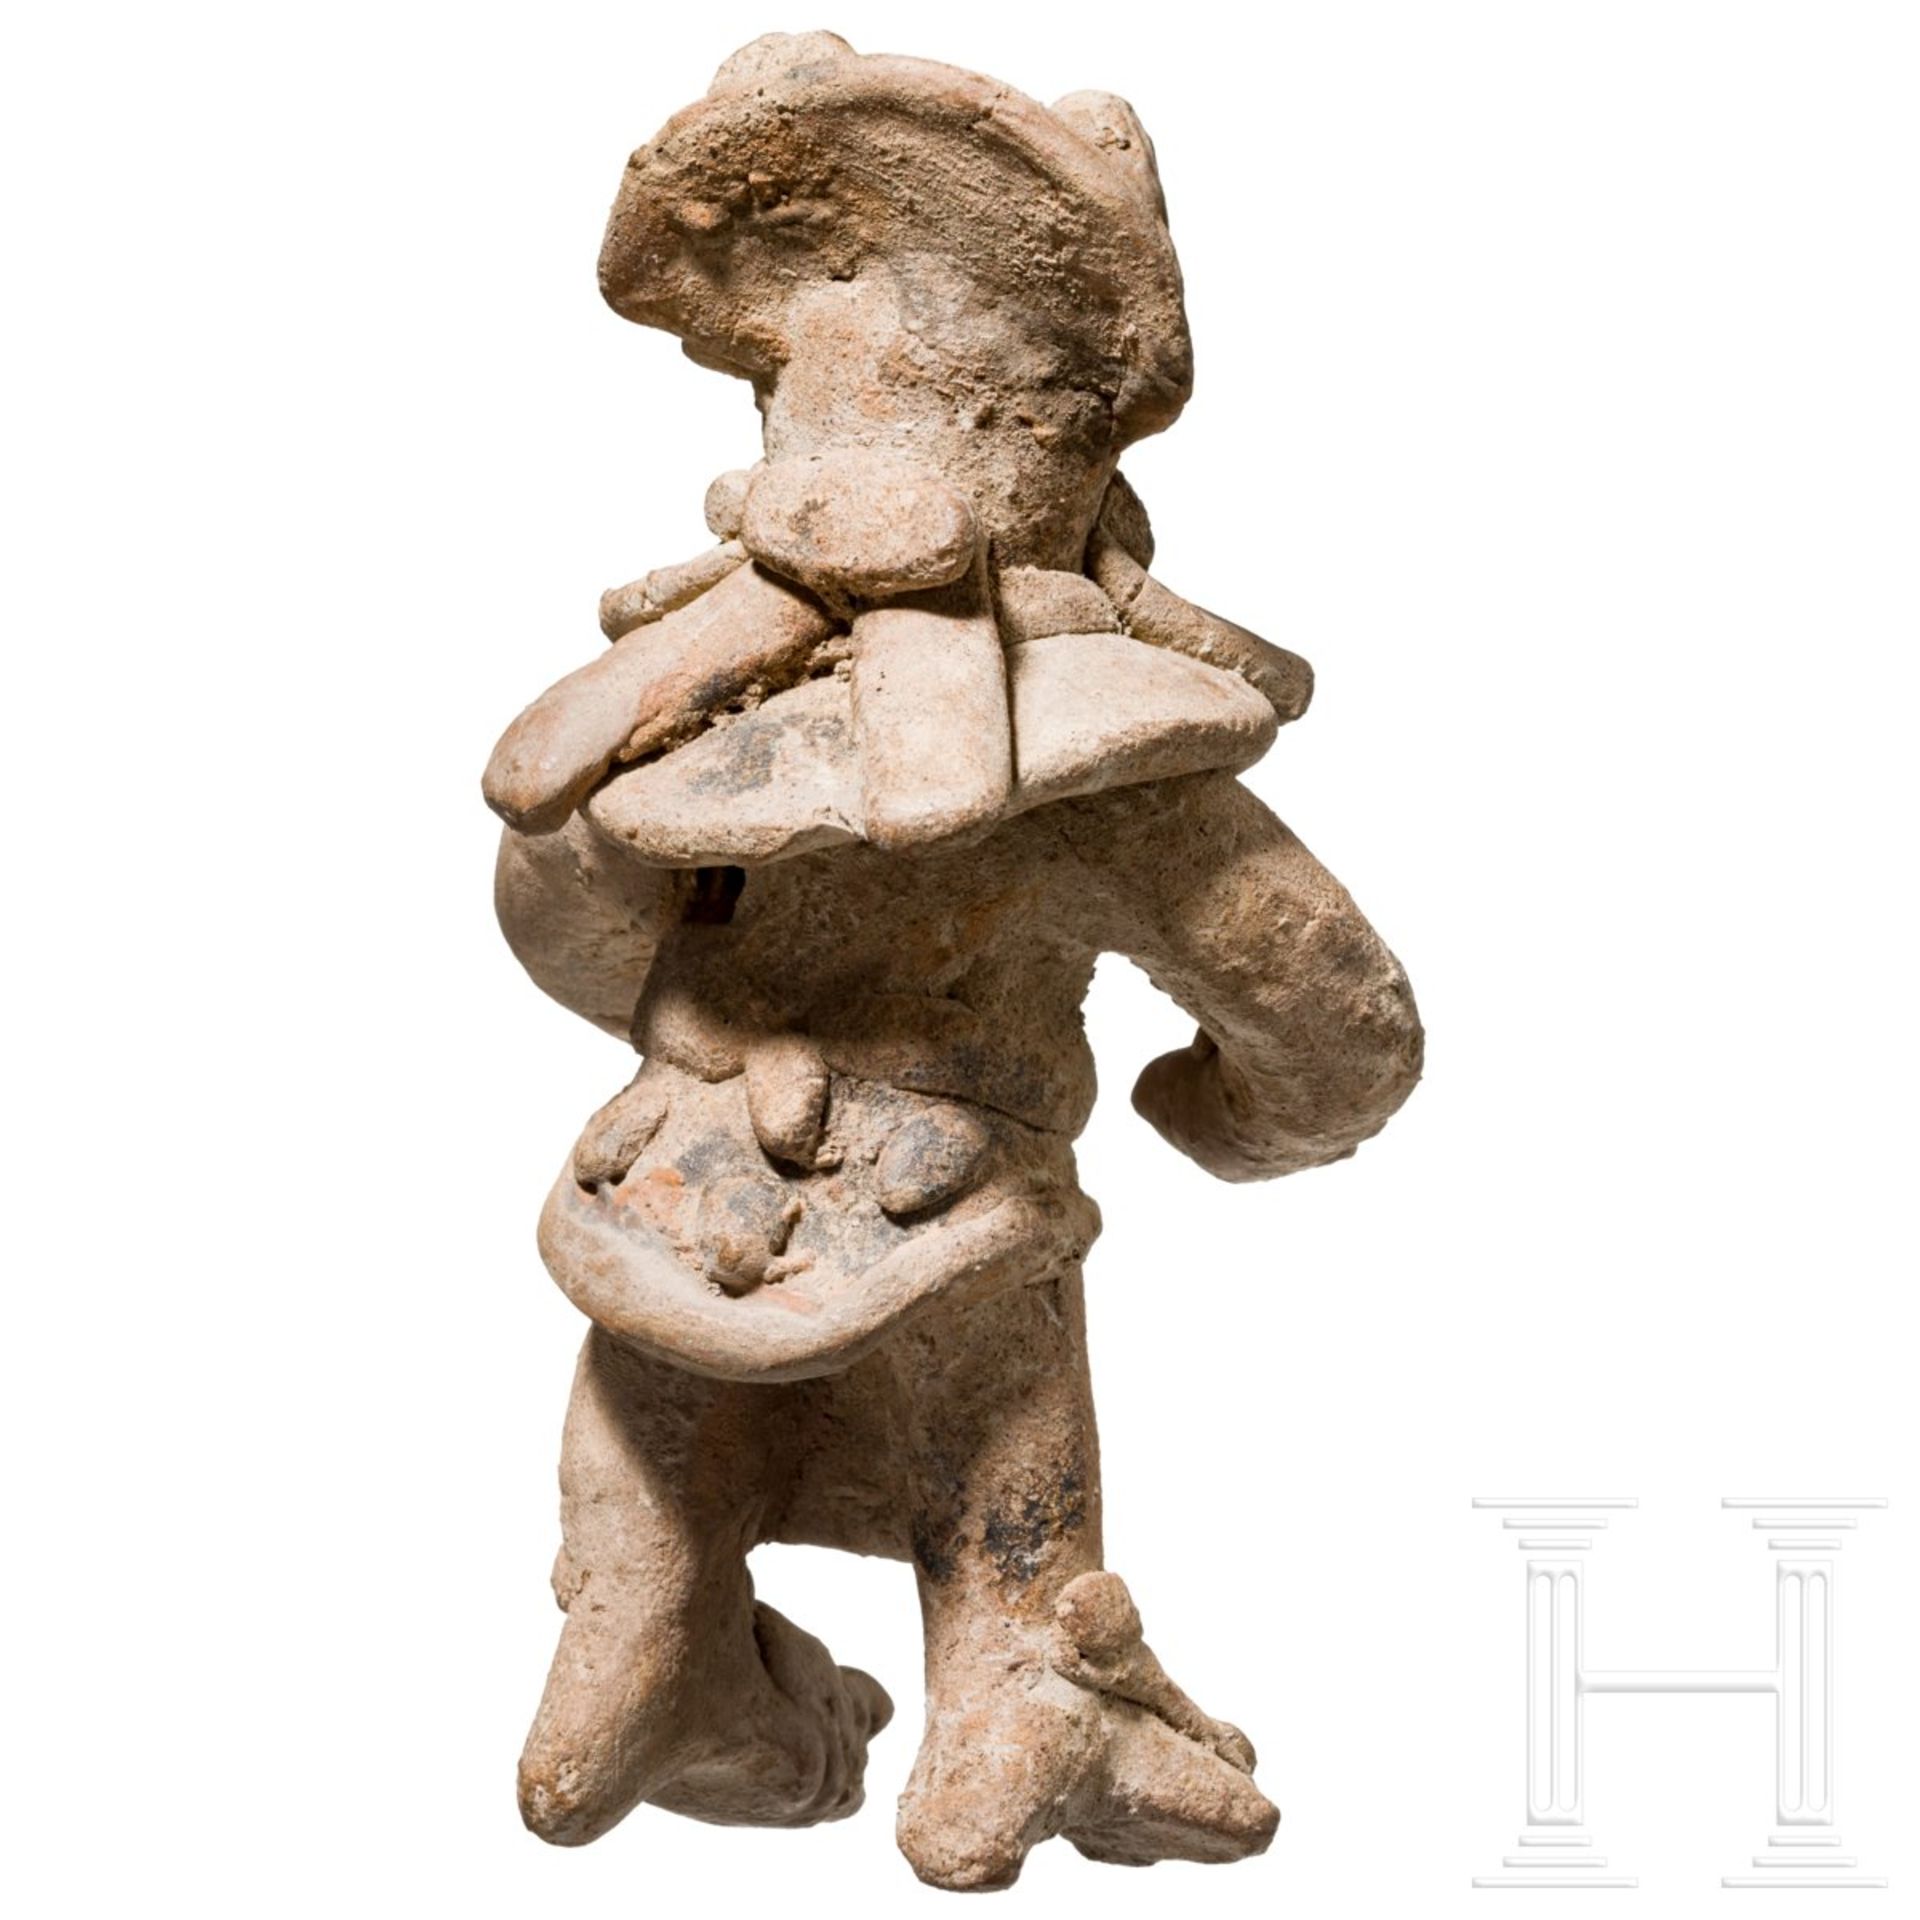 Seltene Terrakottafigur mit Koyotenmaske, Mexiko, Veracruz, ca. 900 - 1200 n. Chr. - Image 4 of 5